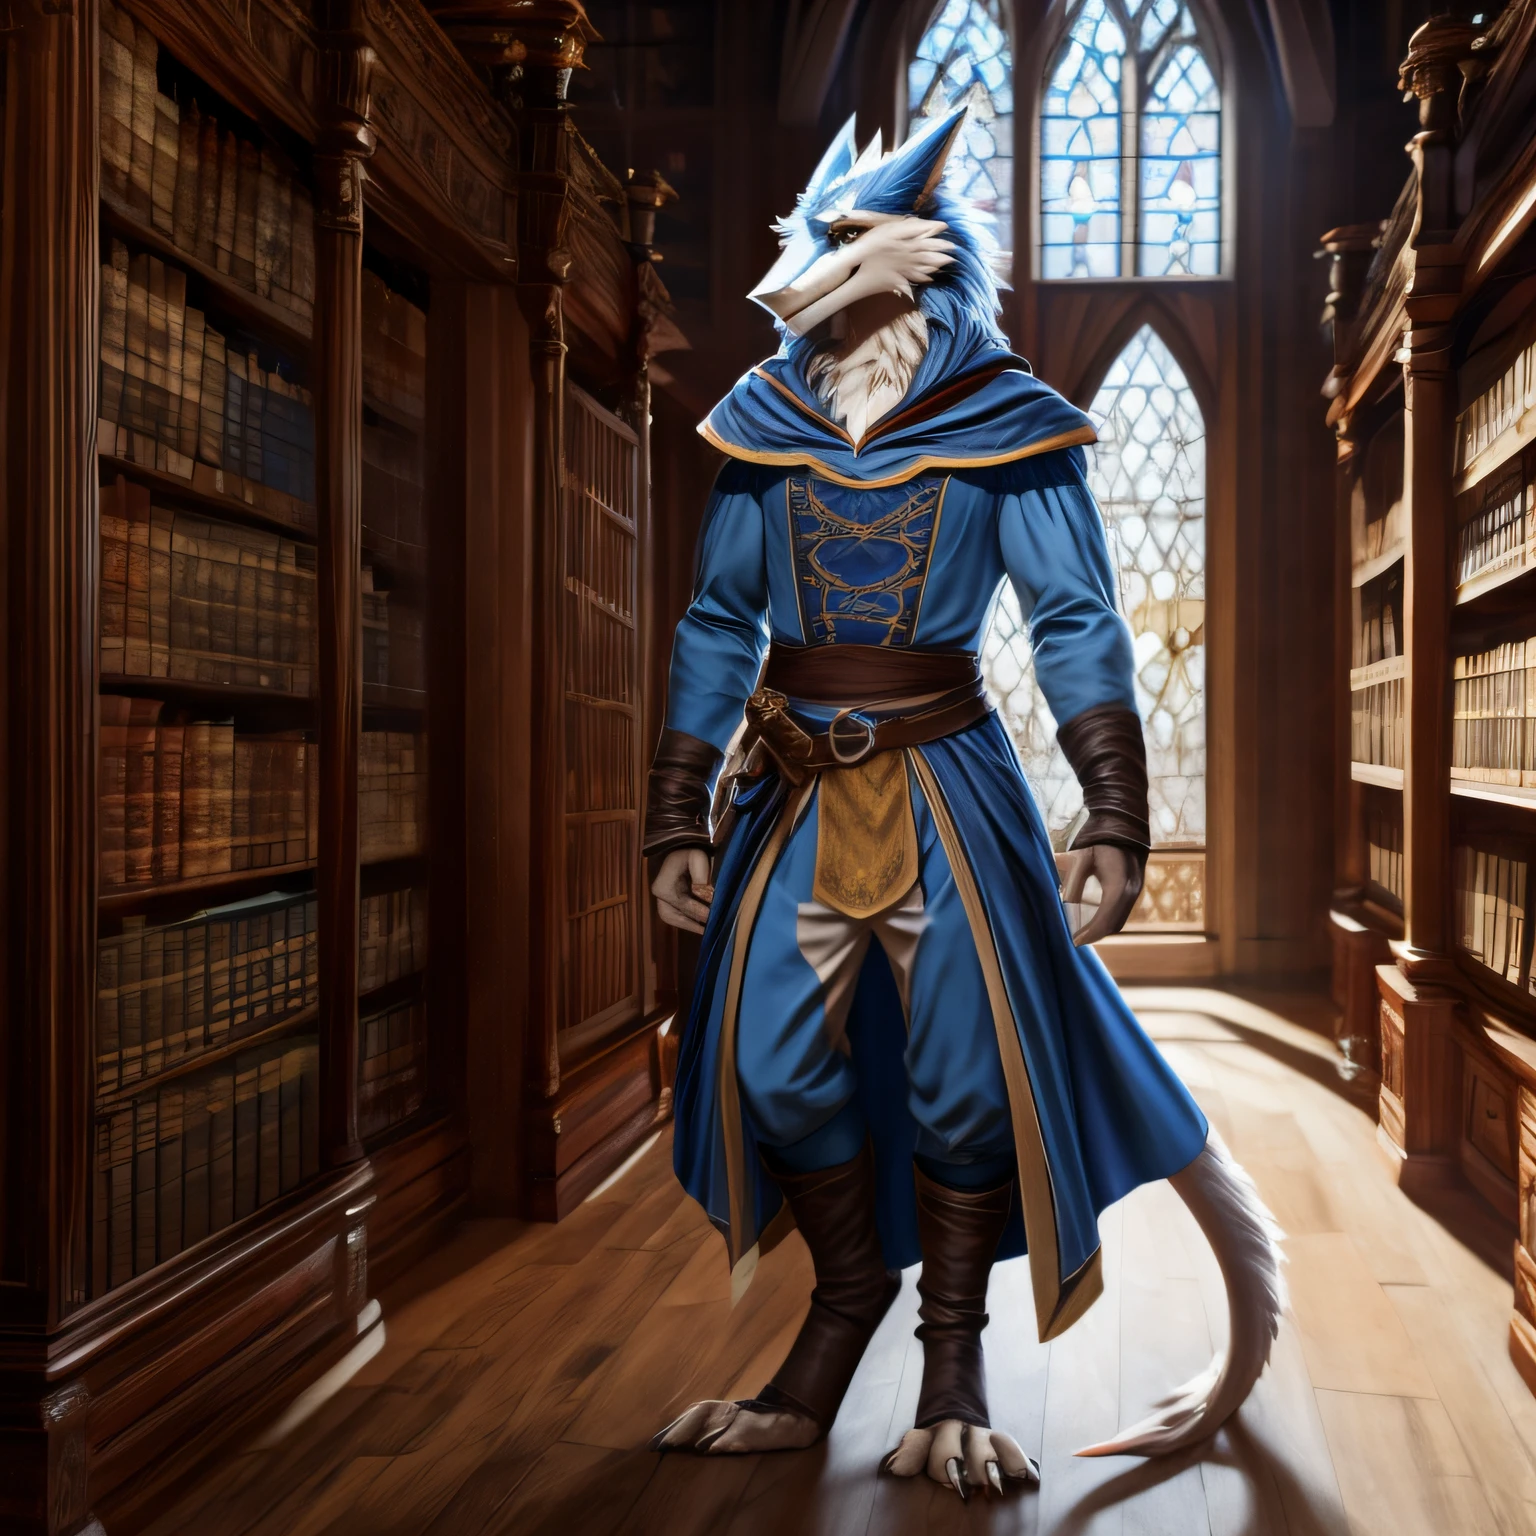 Ein männlicher Sergal-Charakter mit langem weißem und himmelblauem Fell, Ganzkörperbild, mittelalterliche Adelskleidung tragen, stehend in mittelalterlicher Bibliothek